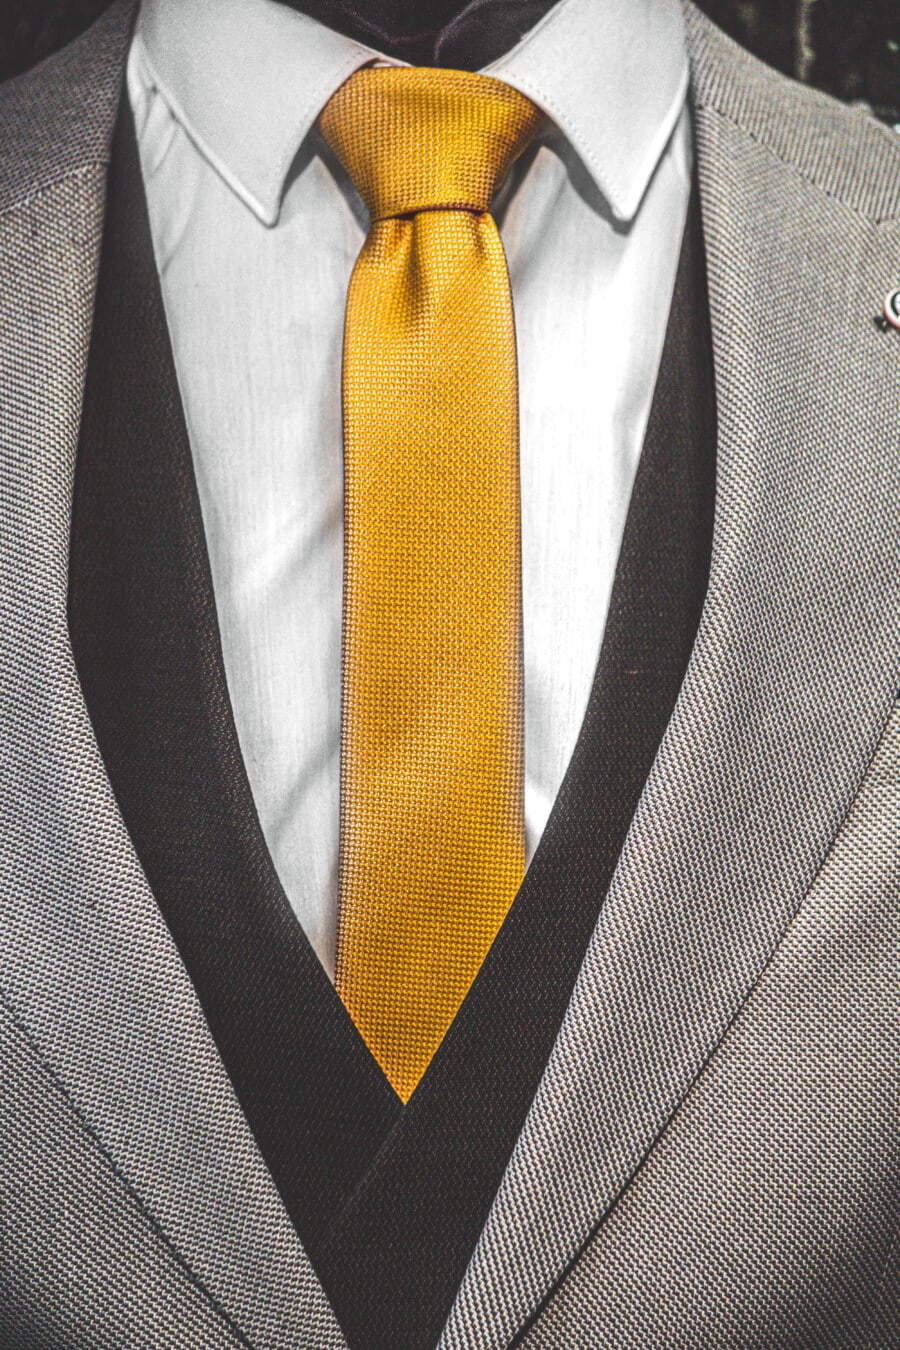 żółty, krawat, garnitur smokingowy, Kurtka, czarno-białe, tekstylne, bawełna, Odzież, biznesmen, garnitur